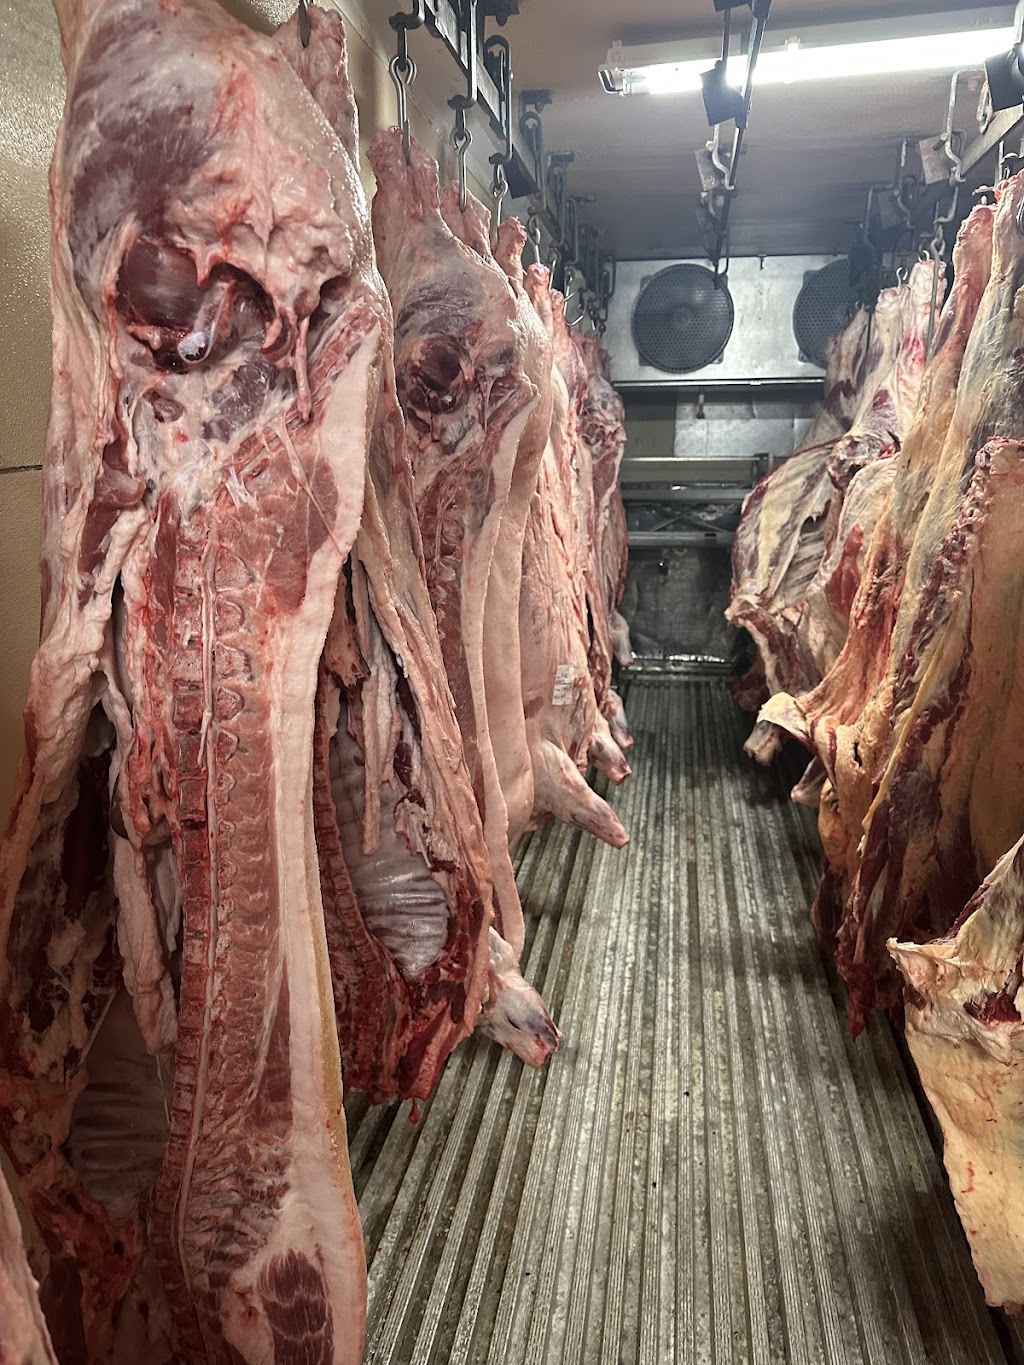 Clarkco Meats Custom Butchering | 3312 Limestone Rd, Cochranville, PA 19330 | Phone: (610) 470-3011